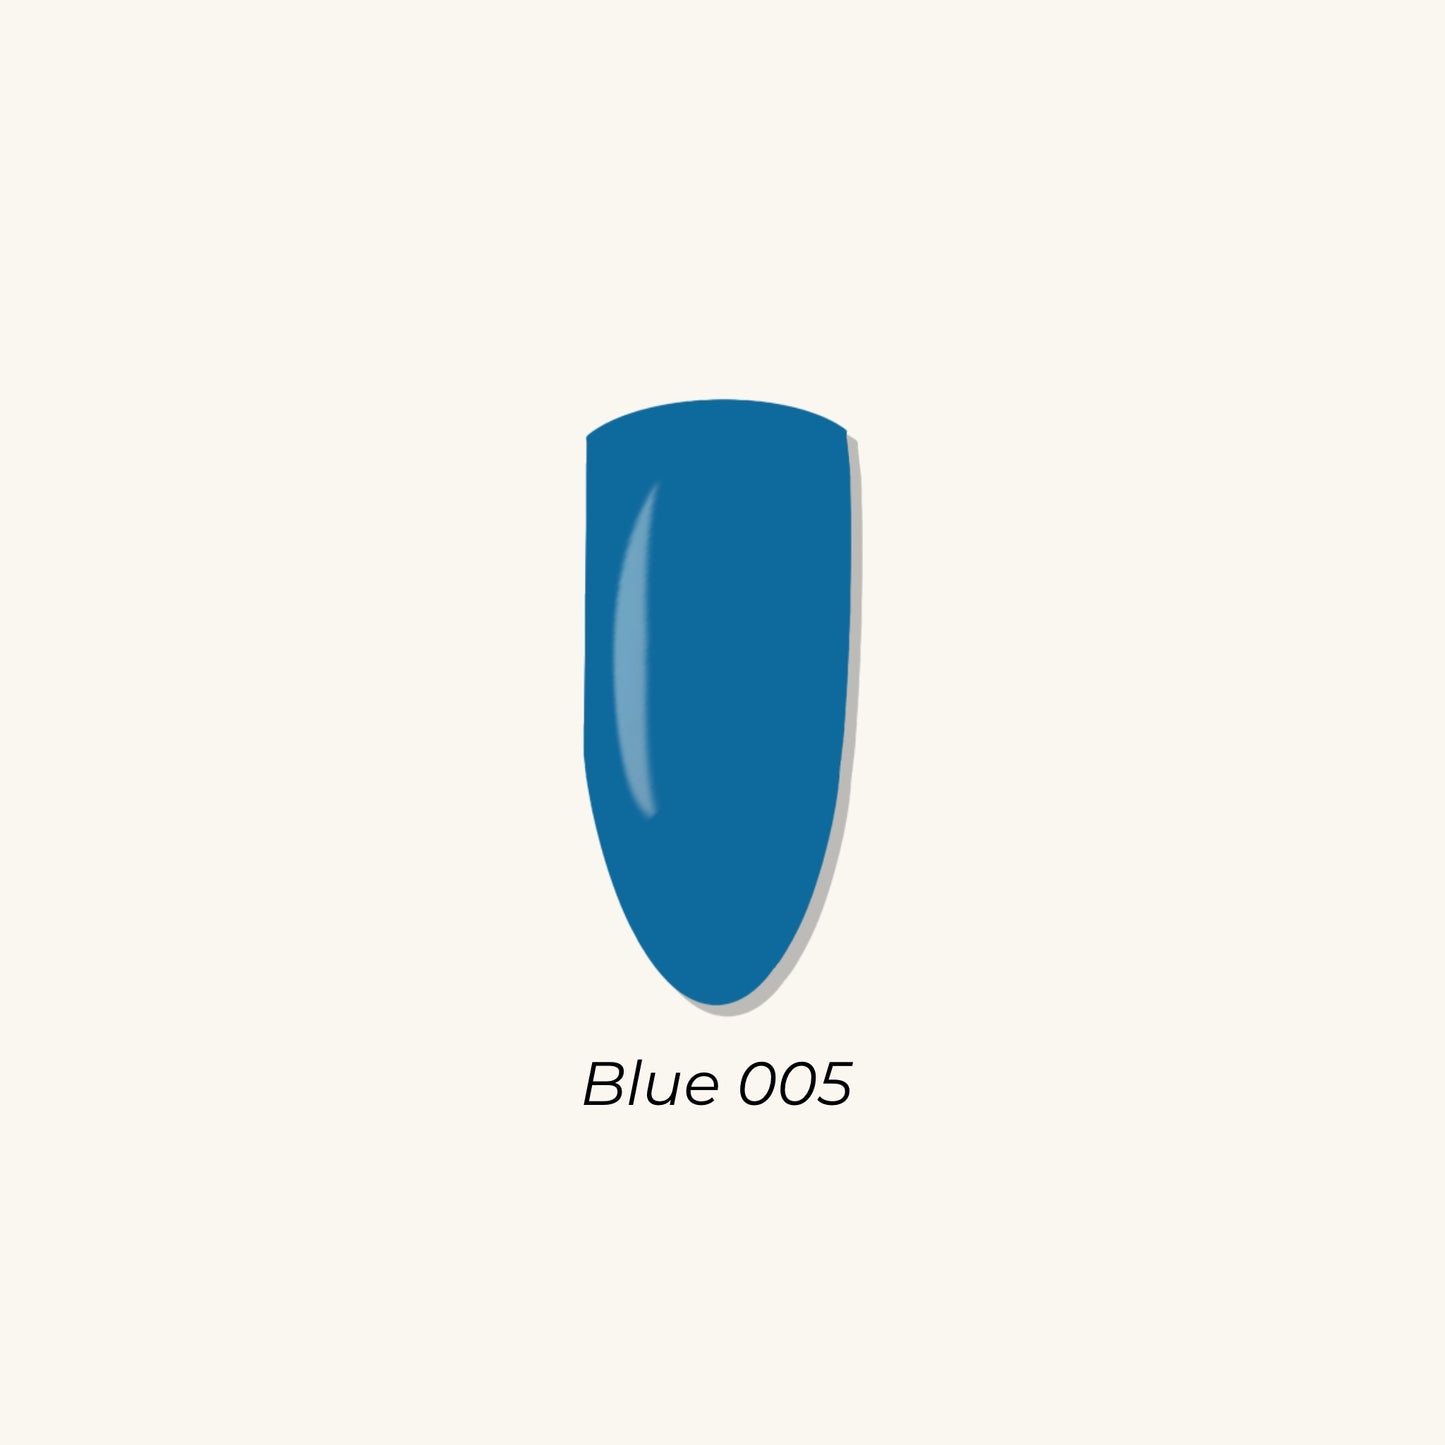 Blue 005